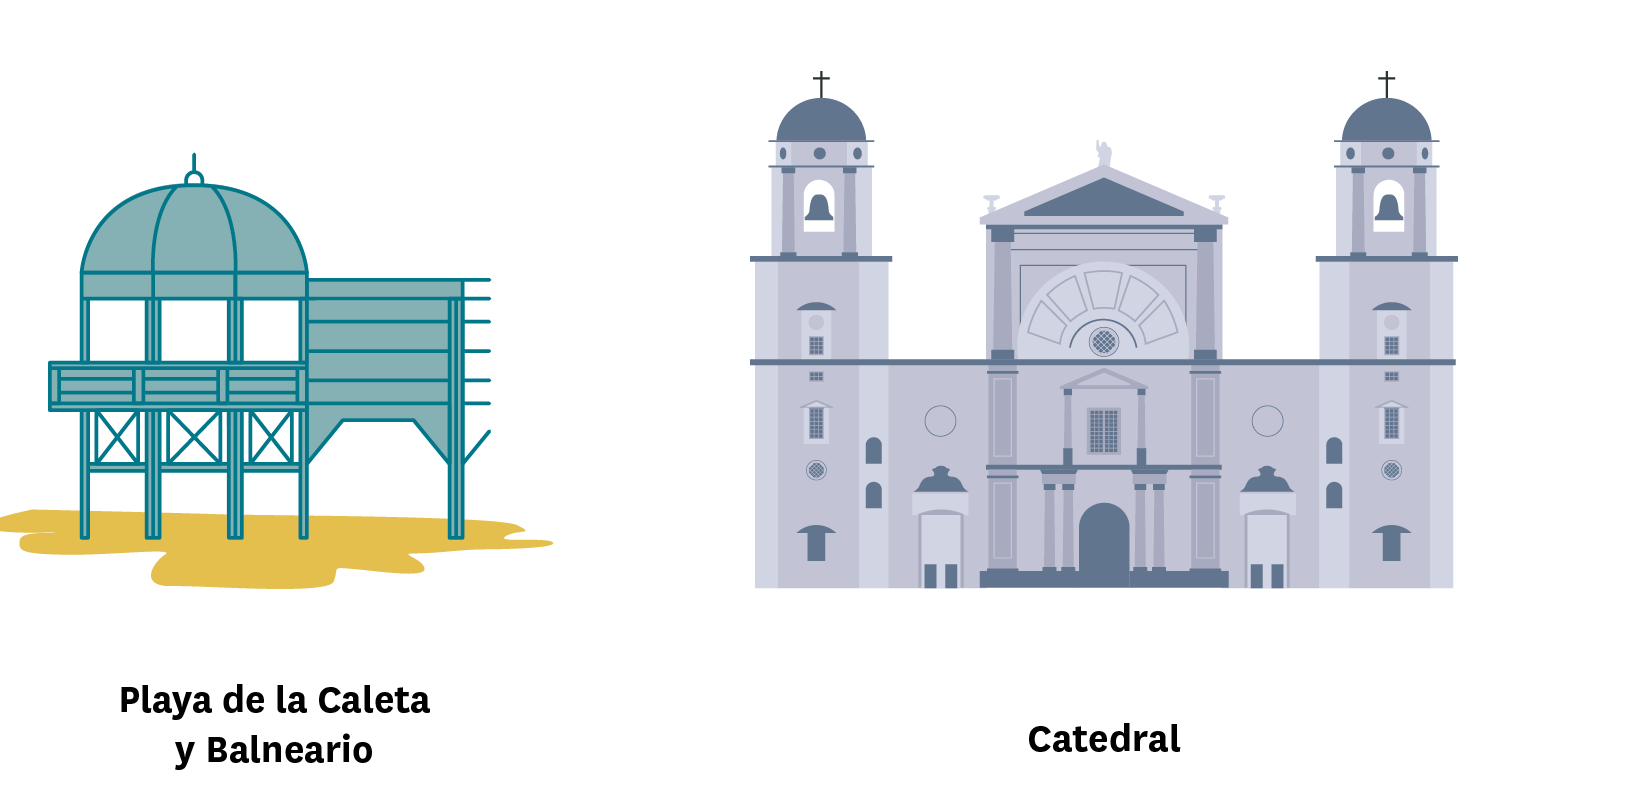 La imagen muestra los monumentos de playa de la Caleta y Catedral de Cadiz